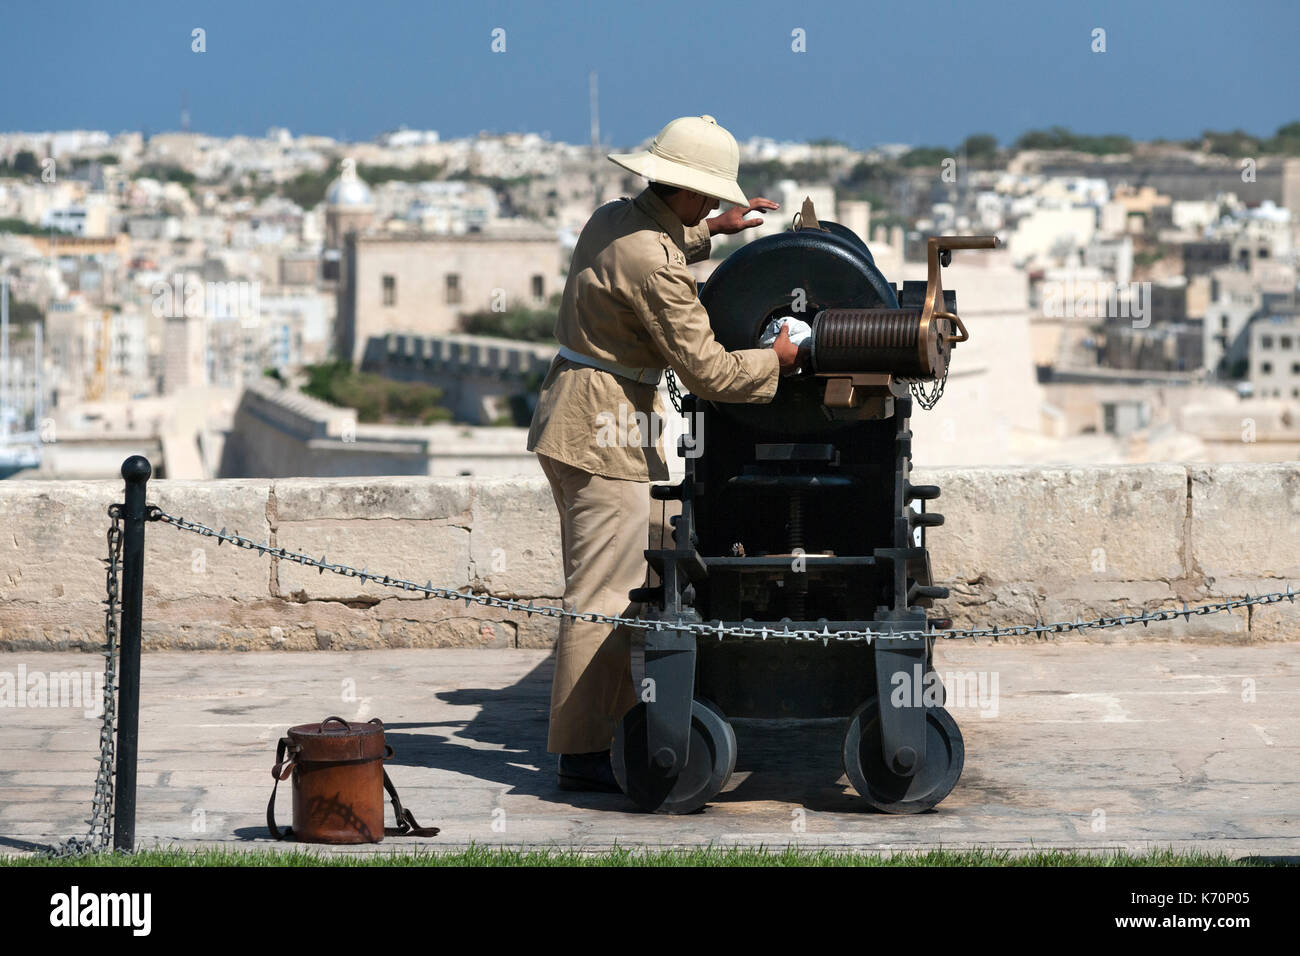 Die 12:00 Uhr Kanone für Feuern auf den Salutierte Batterie in Valletta, Malta vorbereitet. Stockfoto